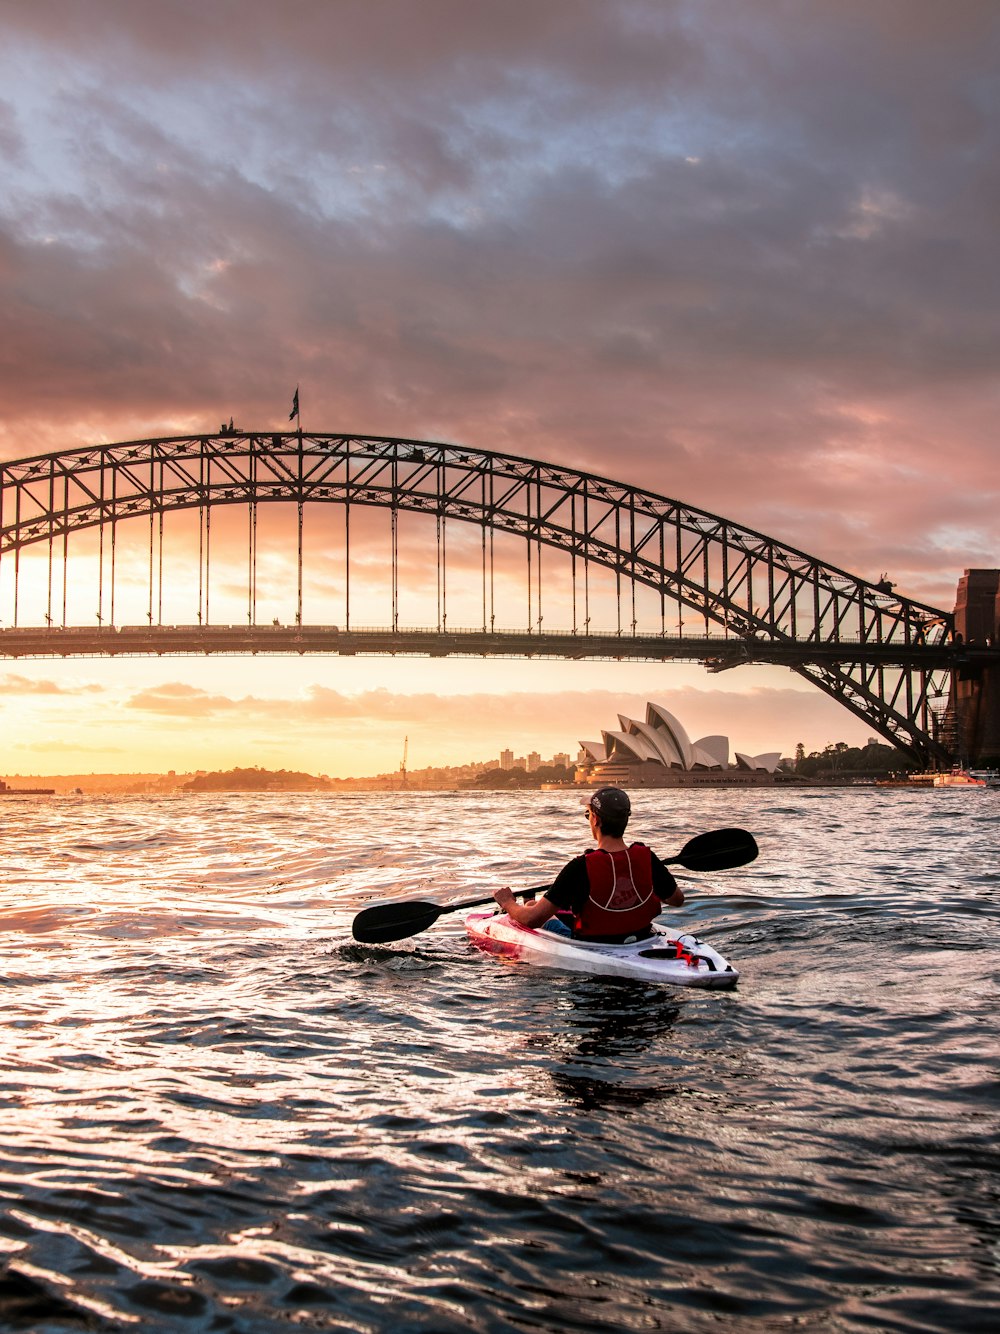 personne conduisant un kayak vers un pont métallique